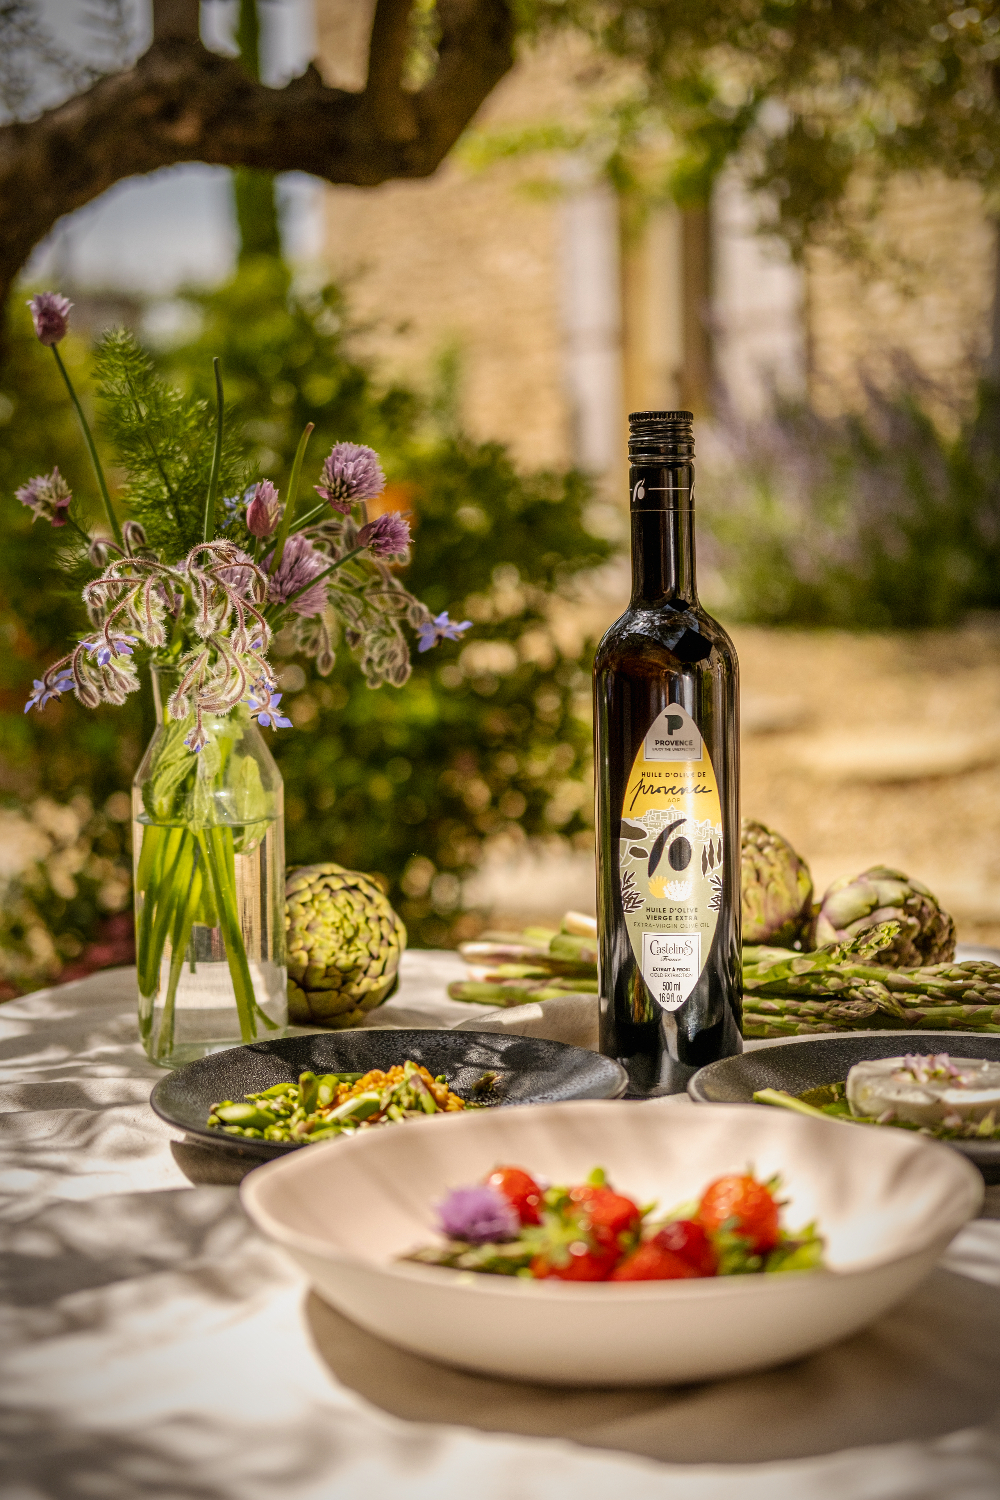 Les huiles de Castelas affichent la marque Provence-Enjoy the unexpected 